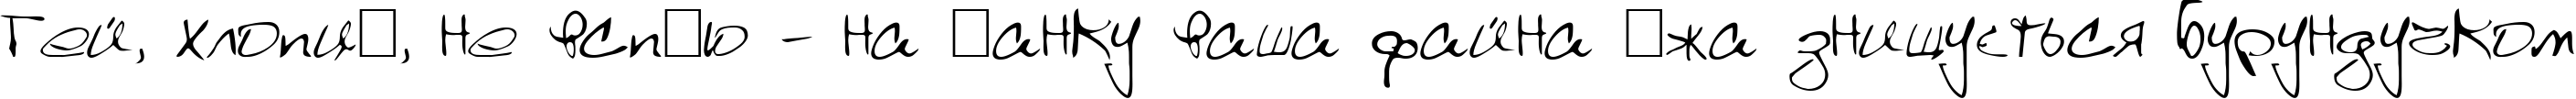 Пример написания шрифтом Scrawl текста на украинском